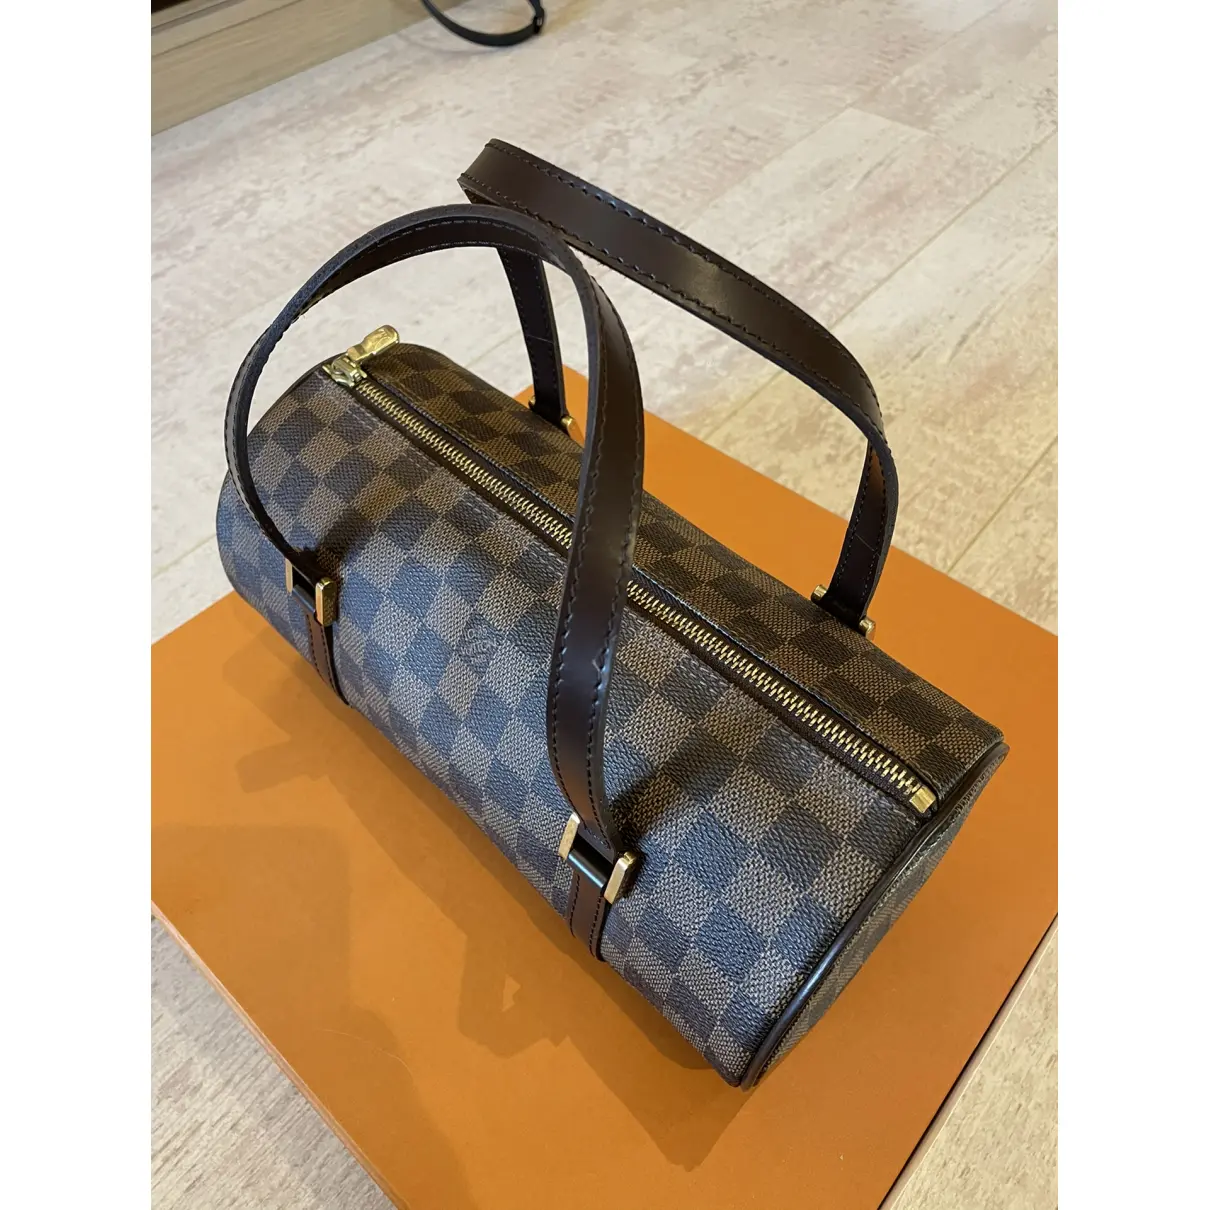 Papillon leather mini bag Louis Vuitton